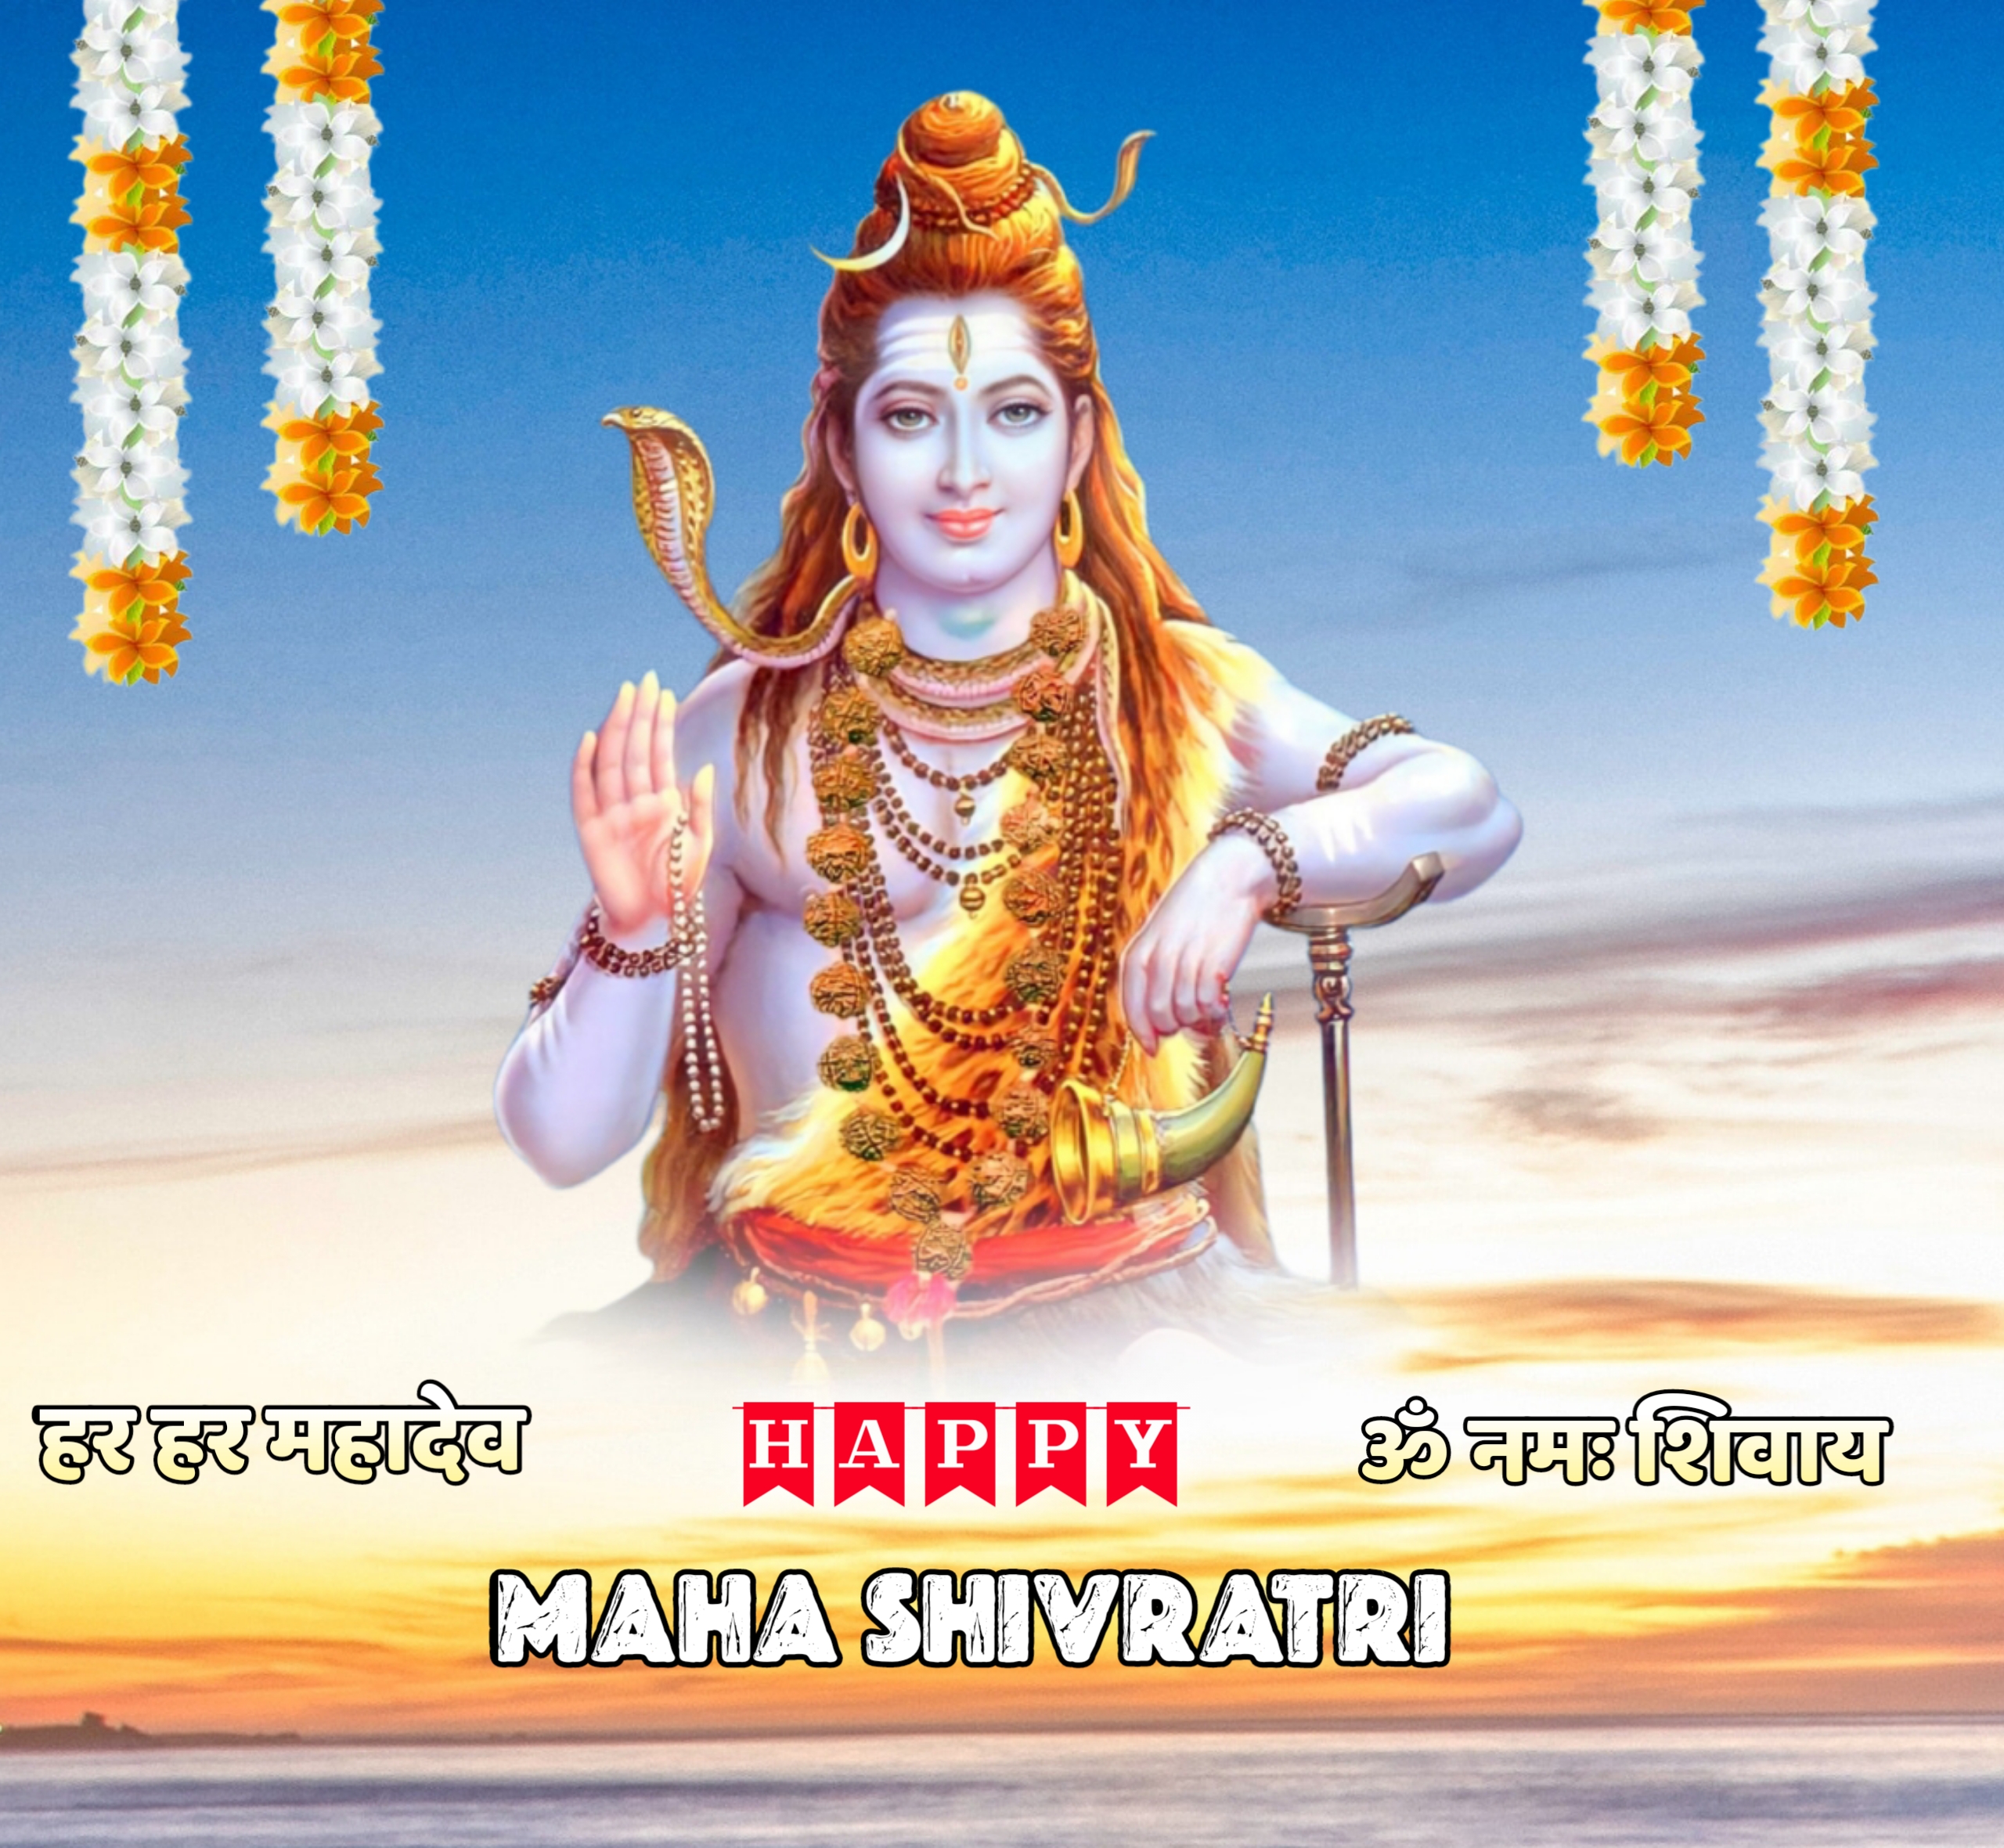 Lord Shiva Photo HD For Maha Shivratri 